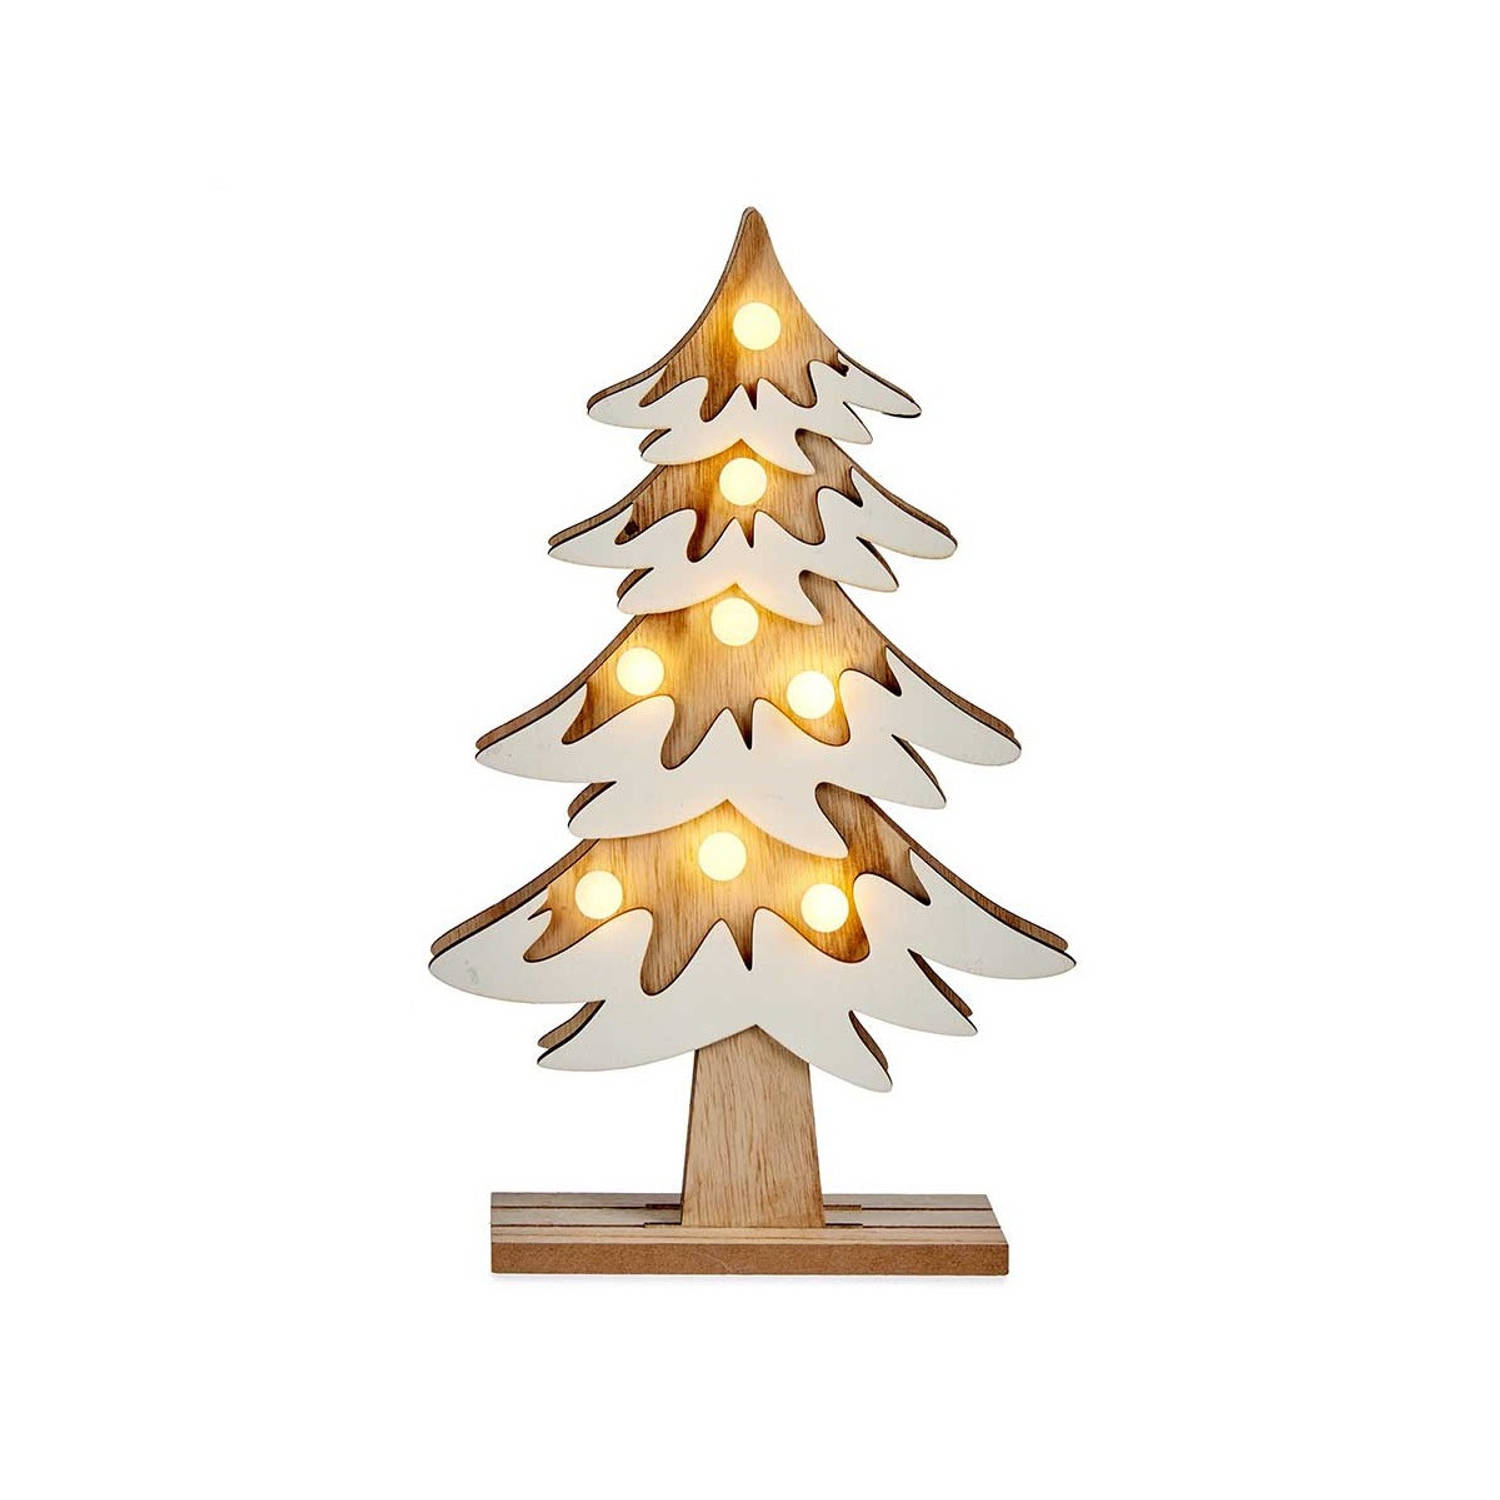 Houten kerstboompje decoratie van 31 cm met LED verlichting - Deco kerstmis ornament